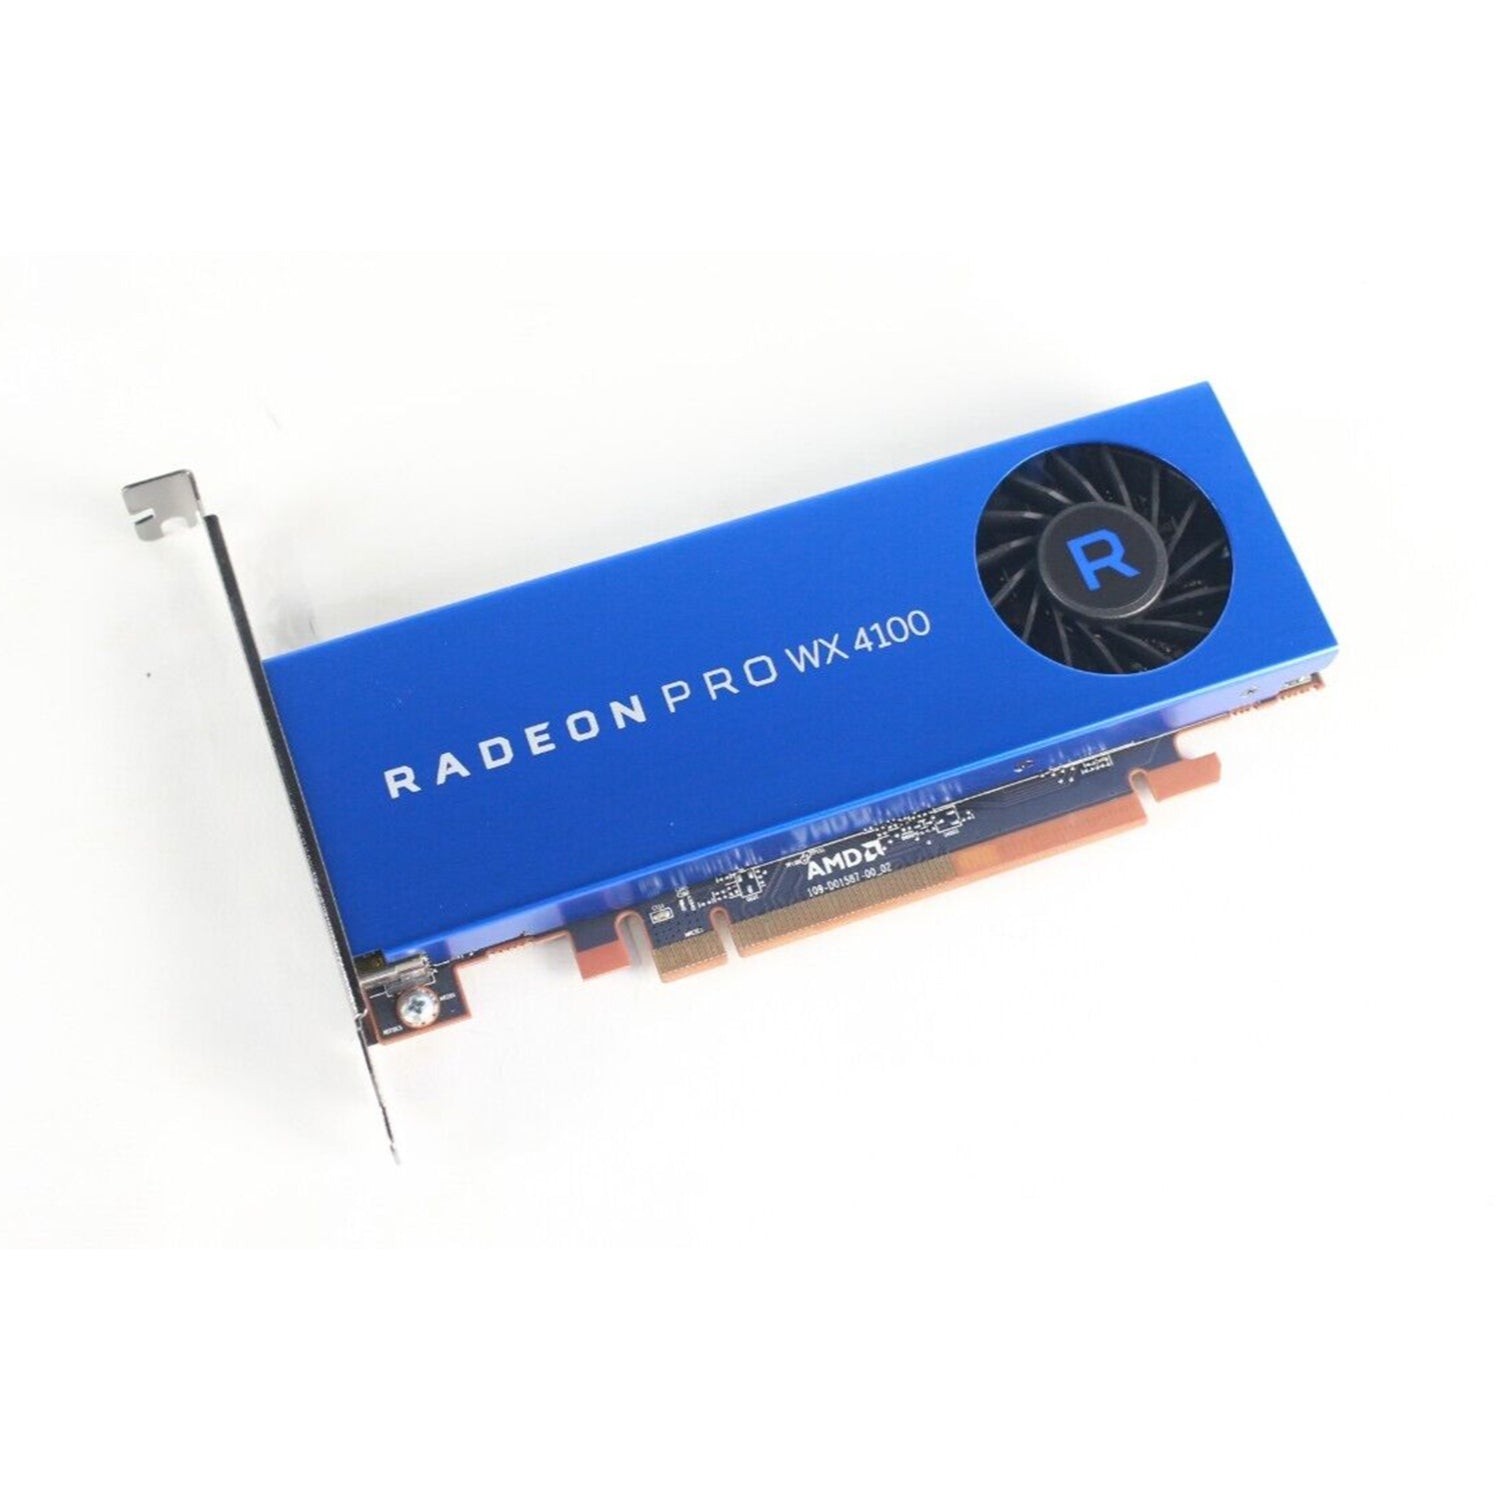 AMD Radeon Pro WX 4100 Professional Graphics Card - 4GB GDDR5, 128-bit Interface, 1024 Stream Processors, 4x Mini DisplayPort, High-Profile Video Card (100-506008) - Refurbished